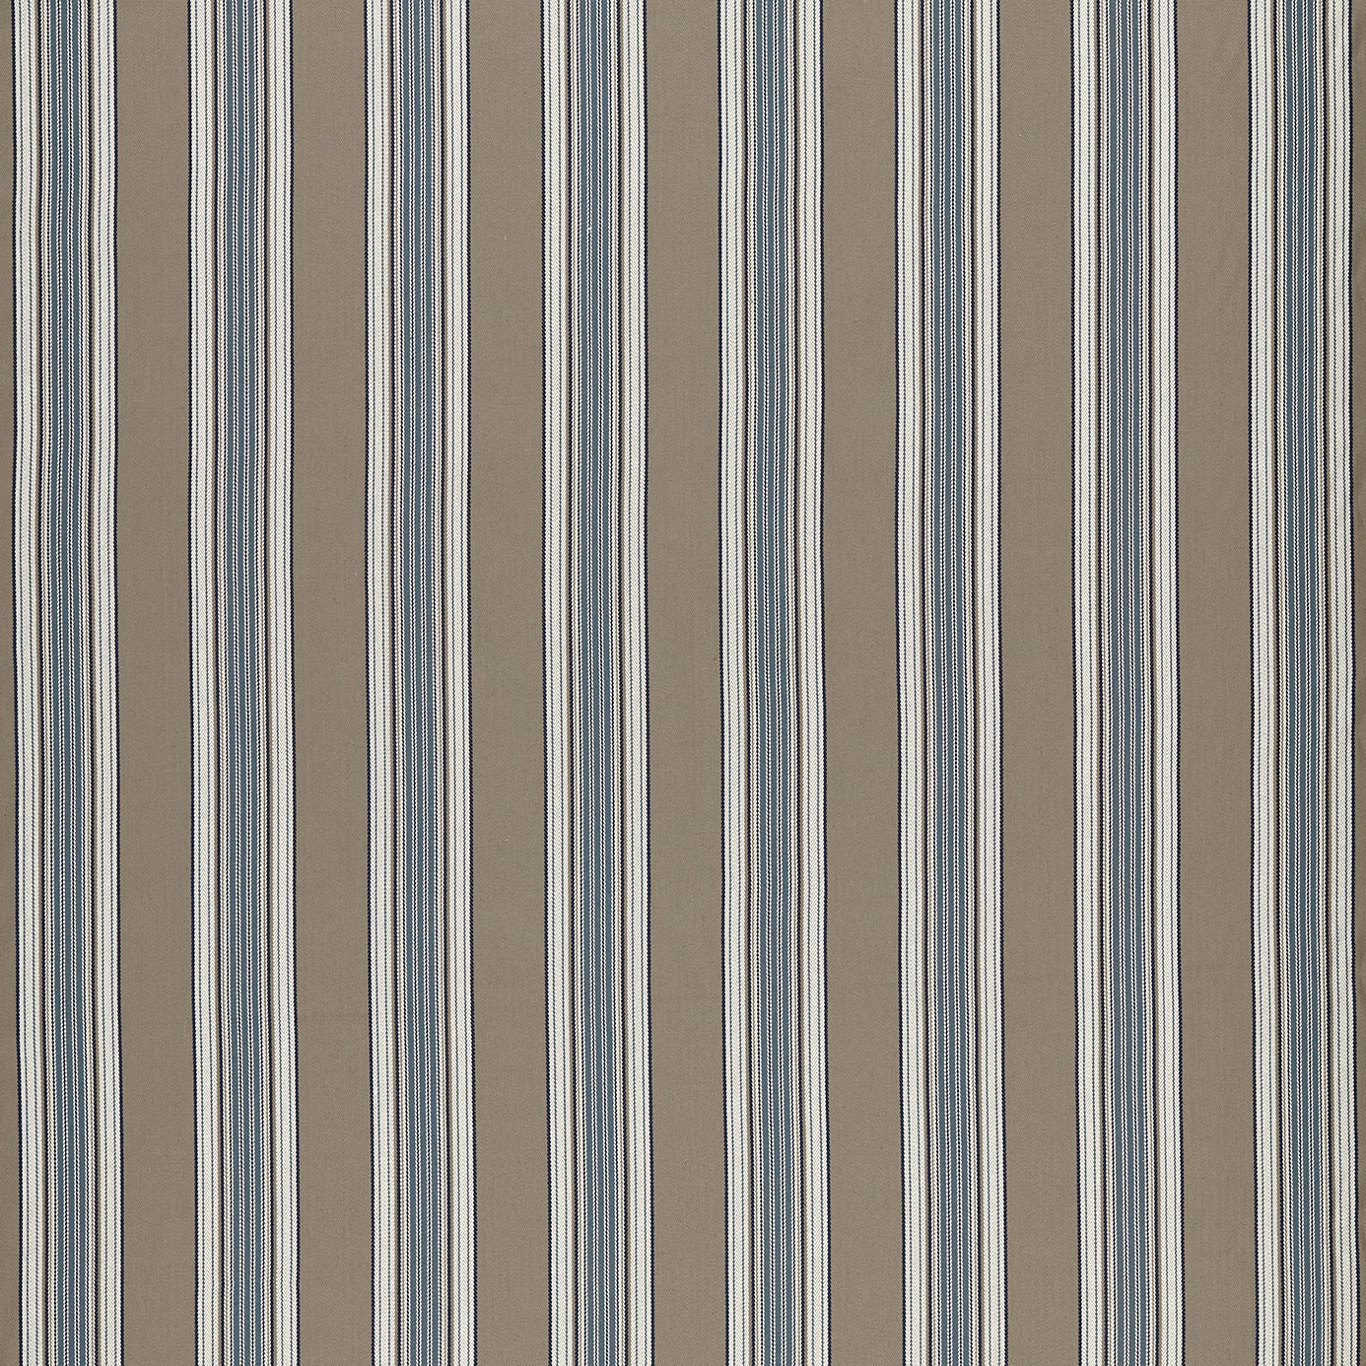 Marylebone Denim/Linen Fabric by CNC